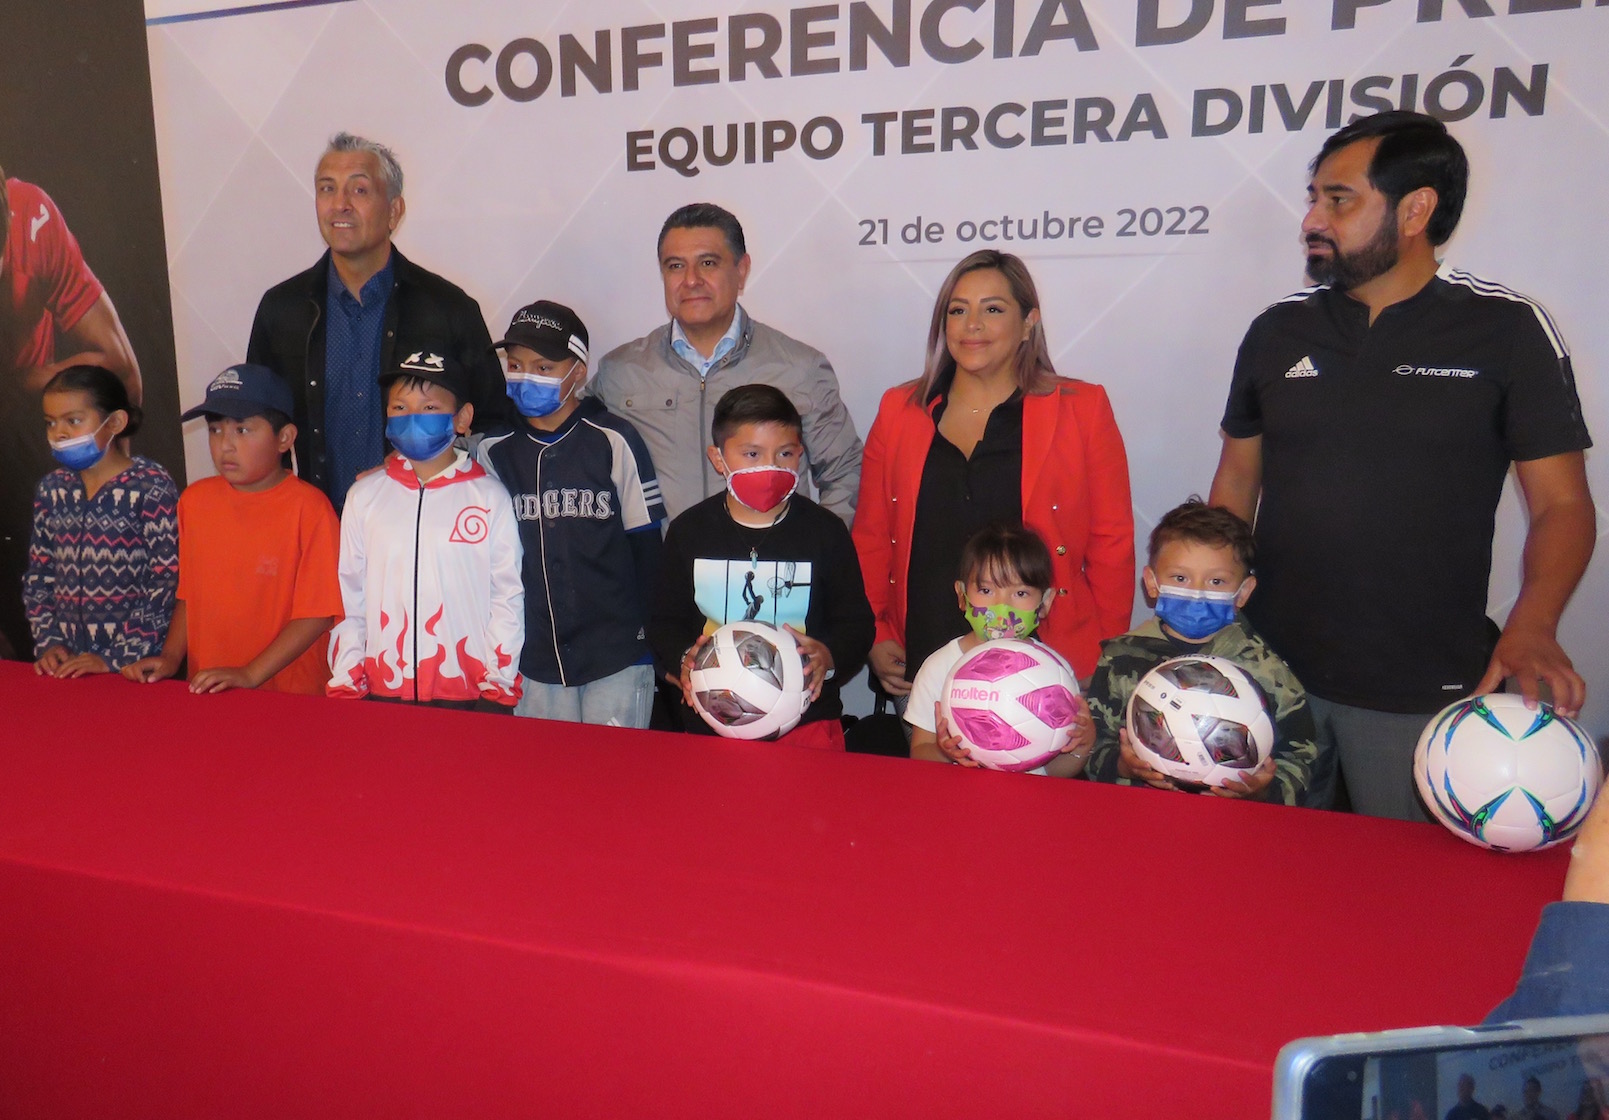 Tlanepantla con equipo de Tercera División, alcalde Tony Rodríguez